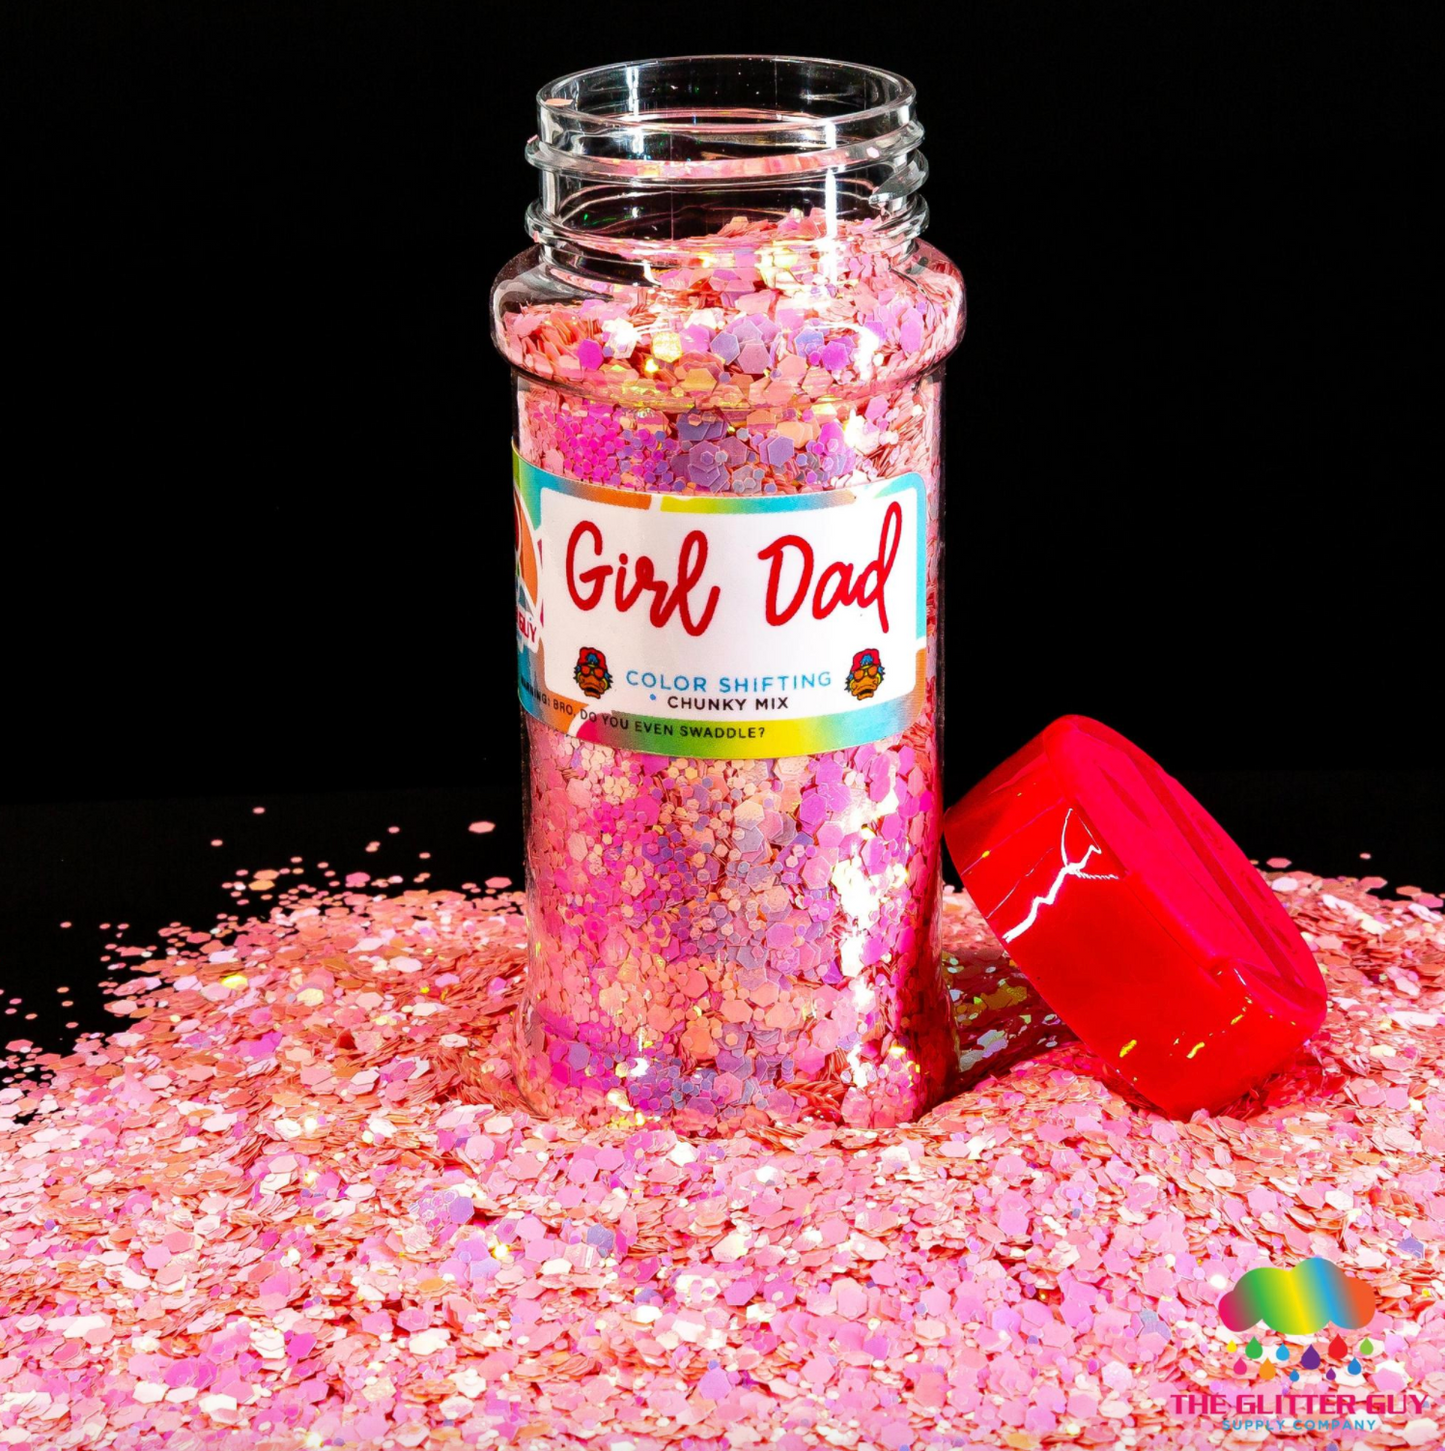 The Glitter Guy Girl Dad Glitter